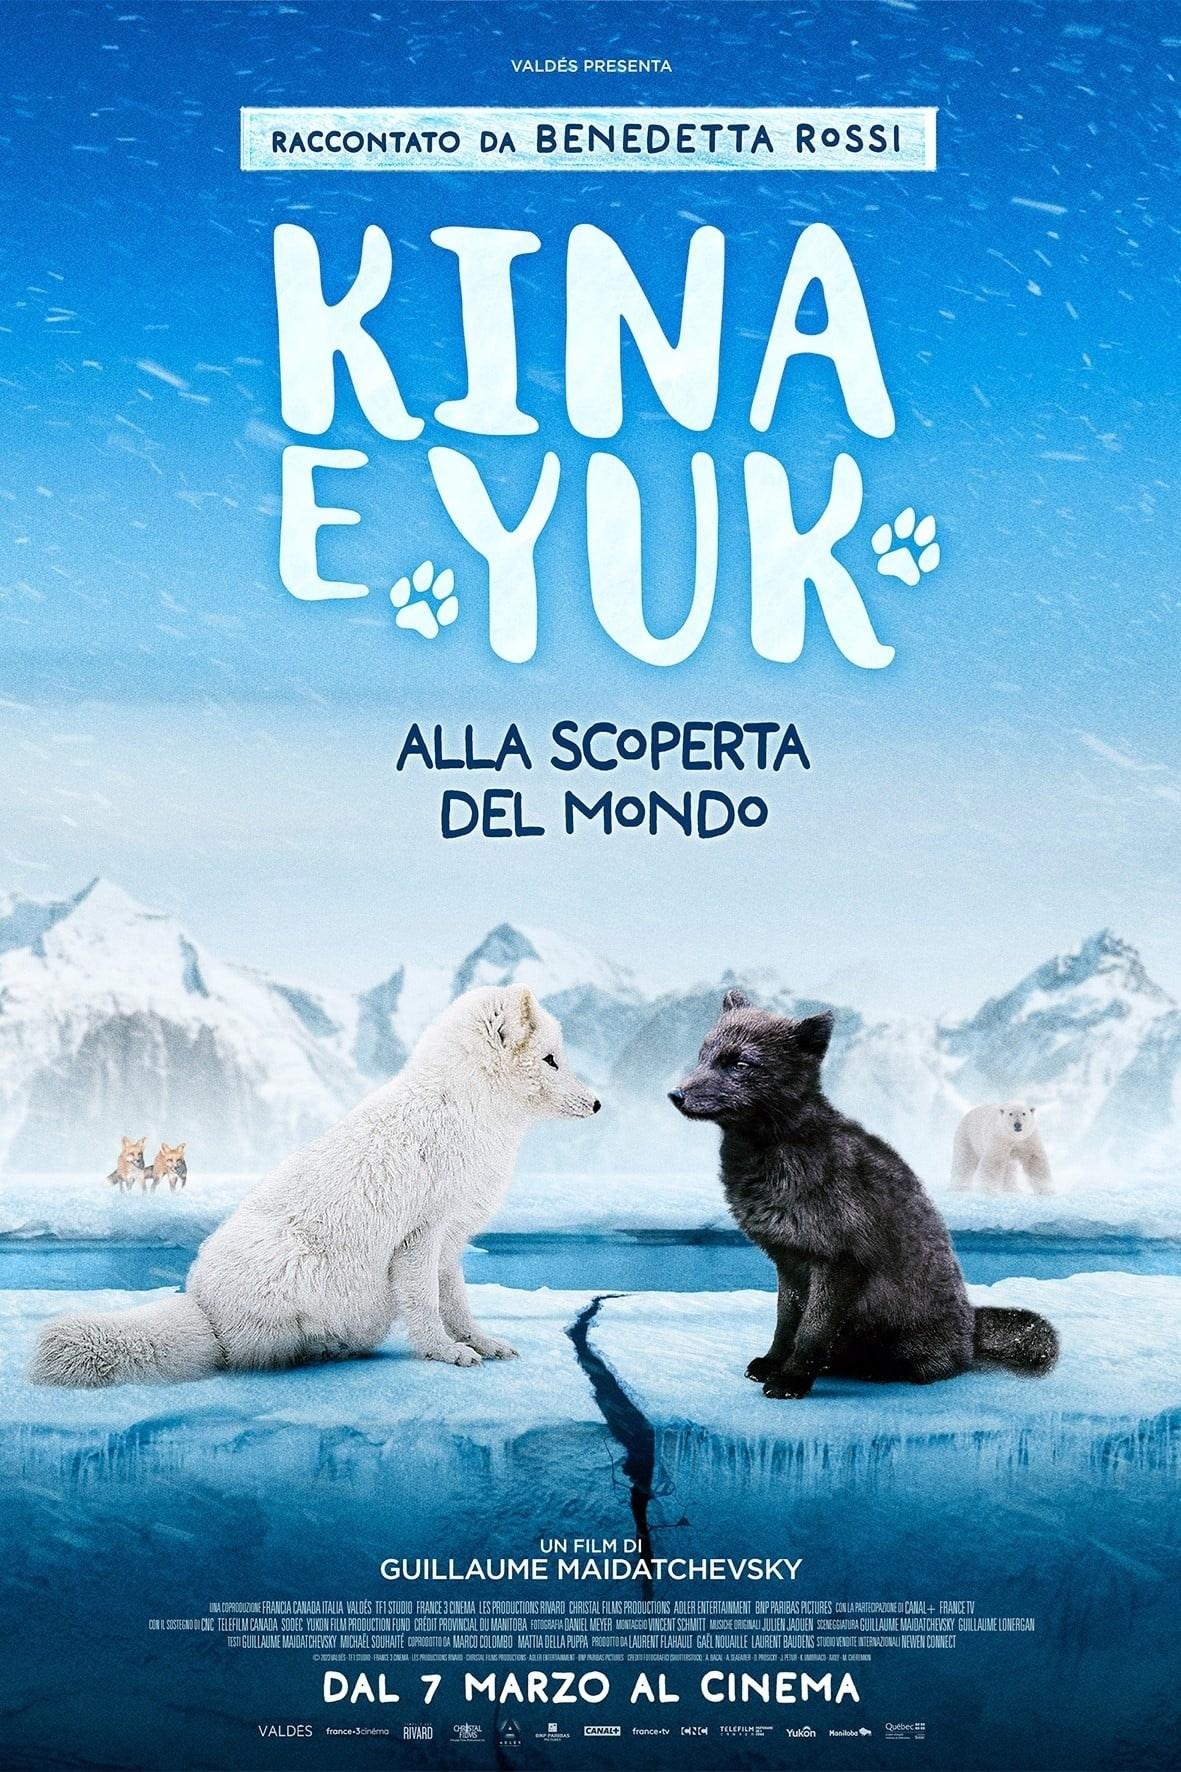 Film di animazione KINA E IUK ALLA SCPERTA DEL MONDO